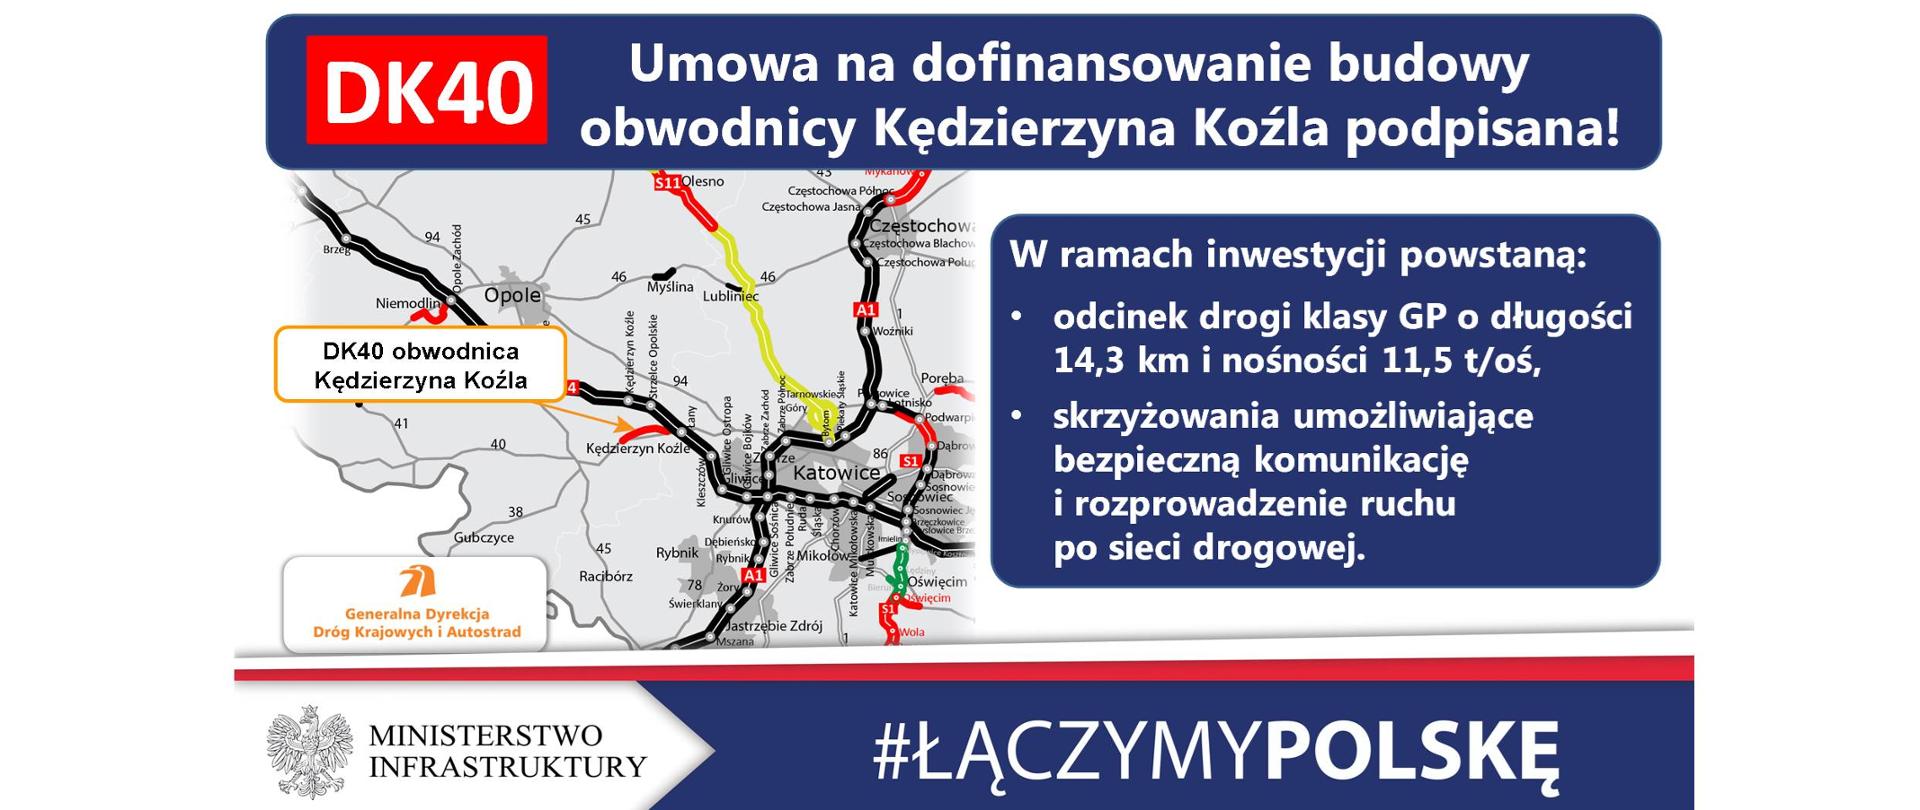 Budowa obwodnicy Kędzierzyna-Koźla z dofinansowaniem z UE - infografika